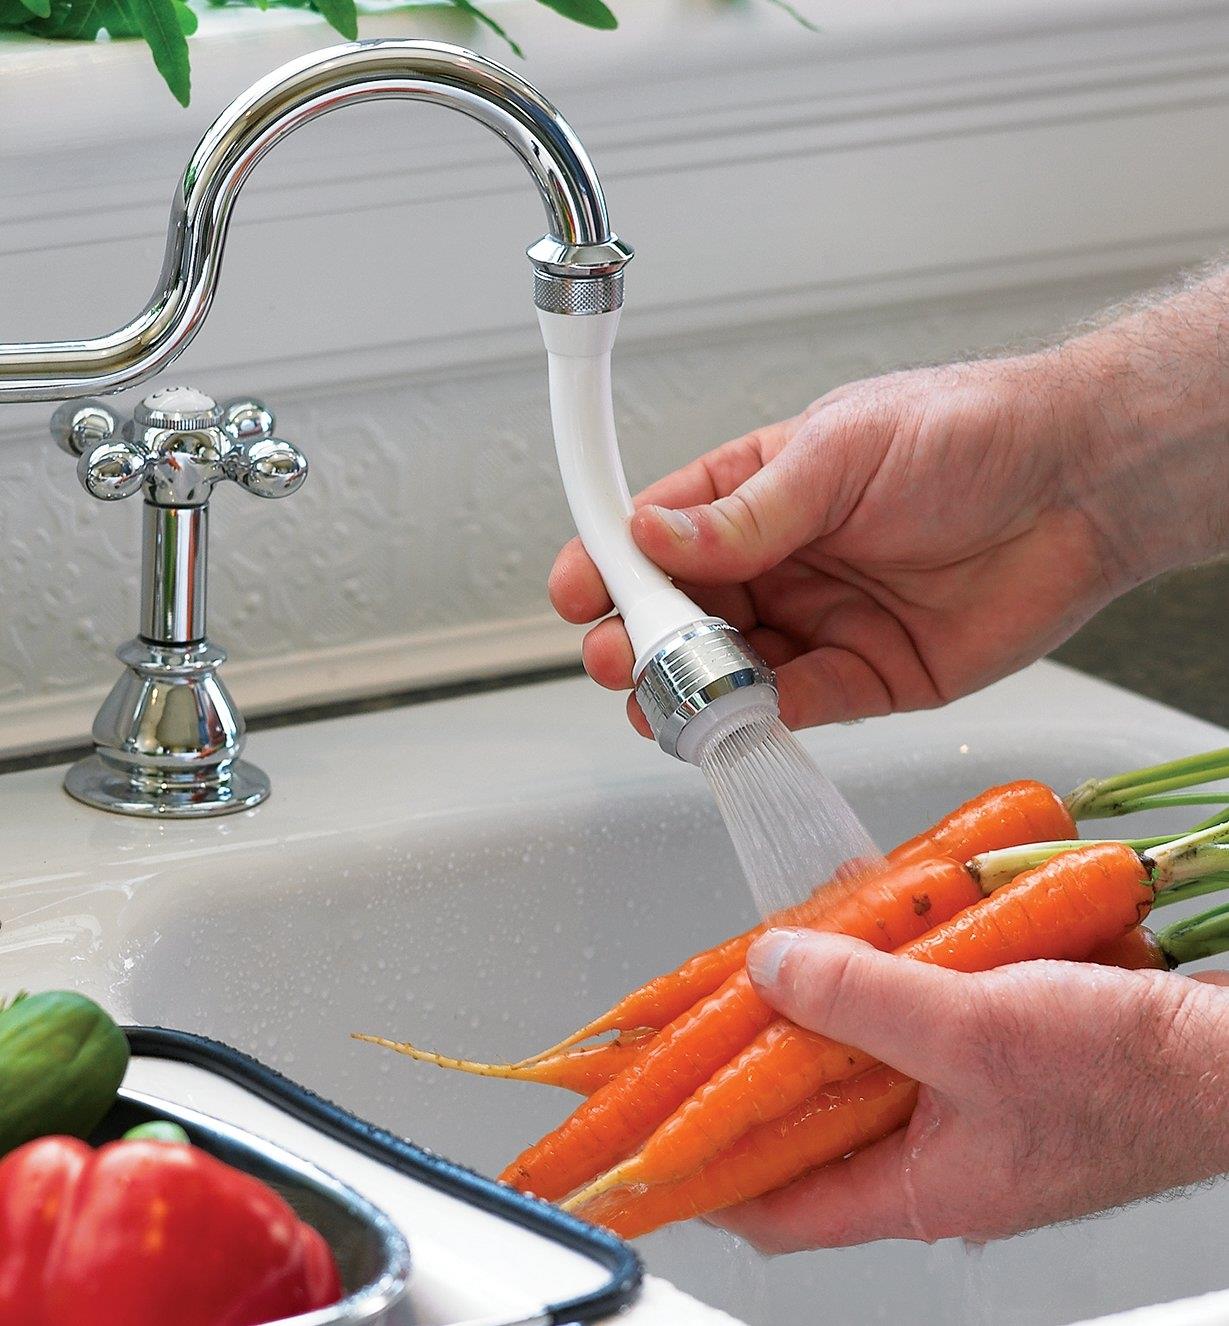 Rinsing carrots using the Flexible-Neck Sprayer